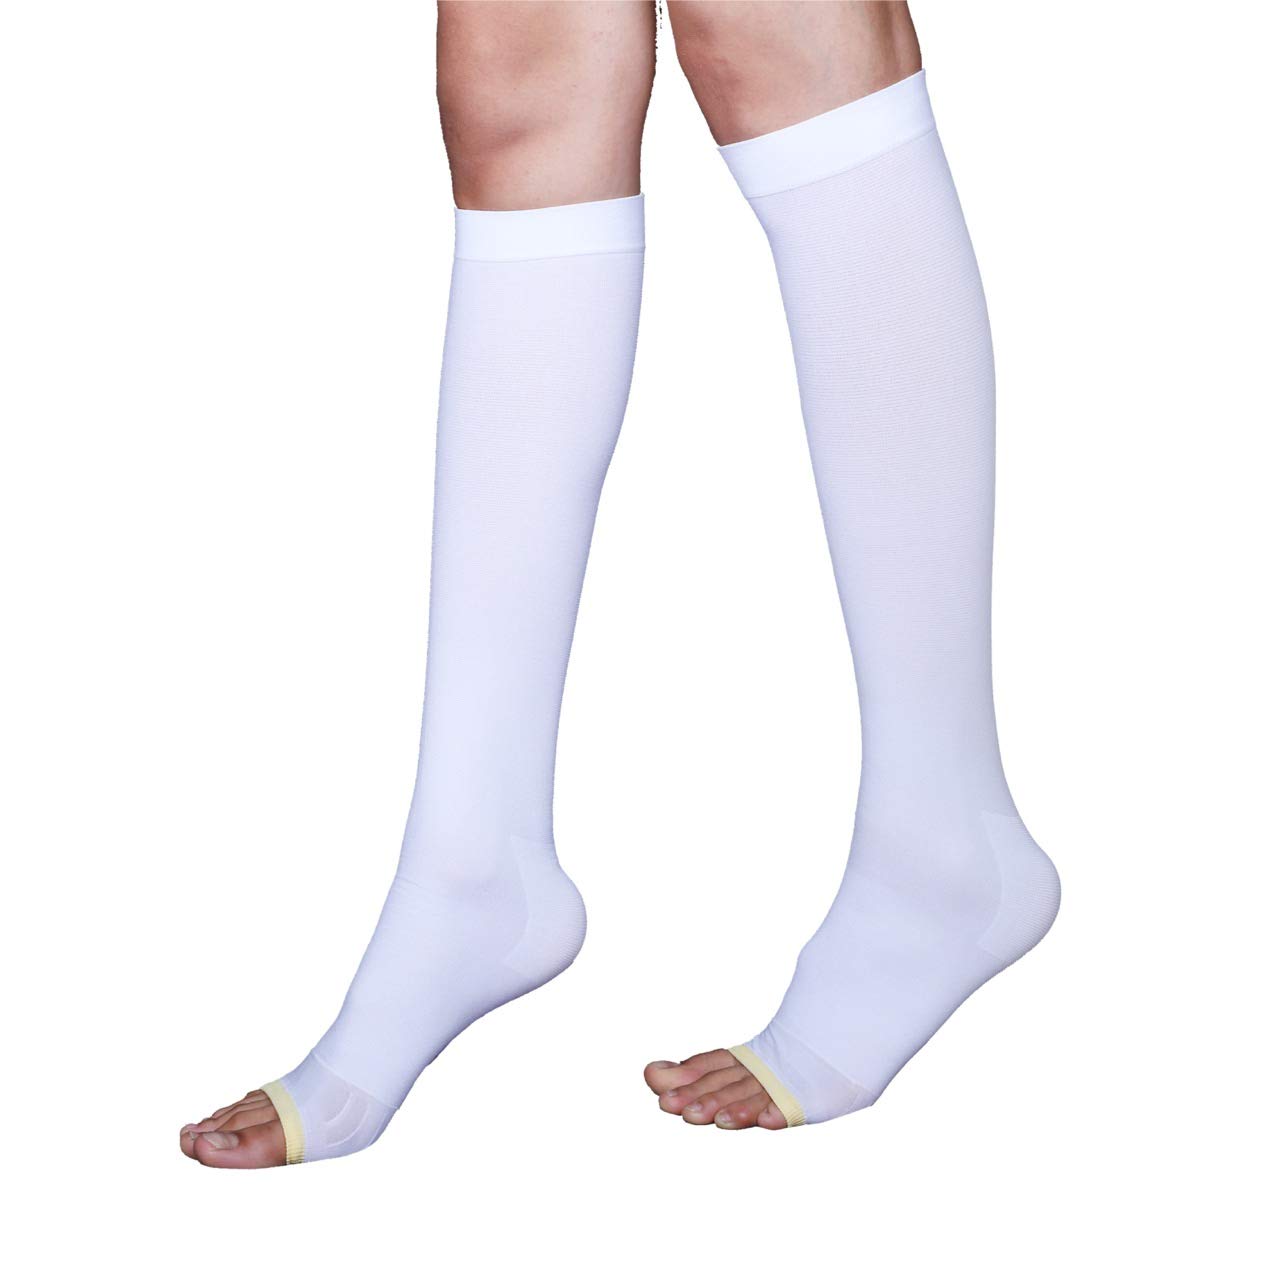 Buy Anti Embolism Stockings (D.V.T.) Class 1 Thigh High (Pair